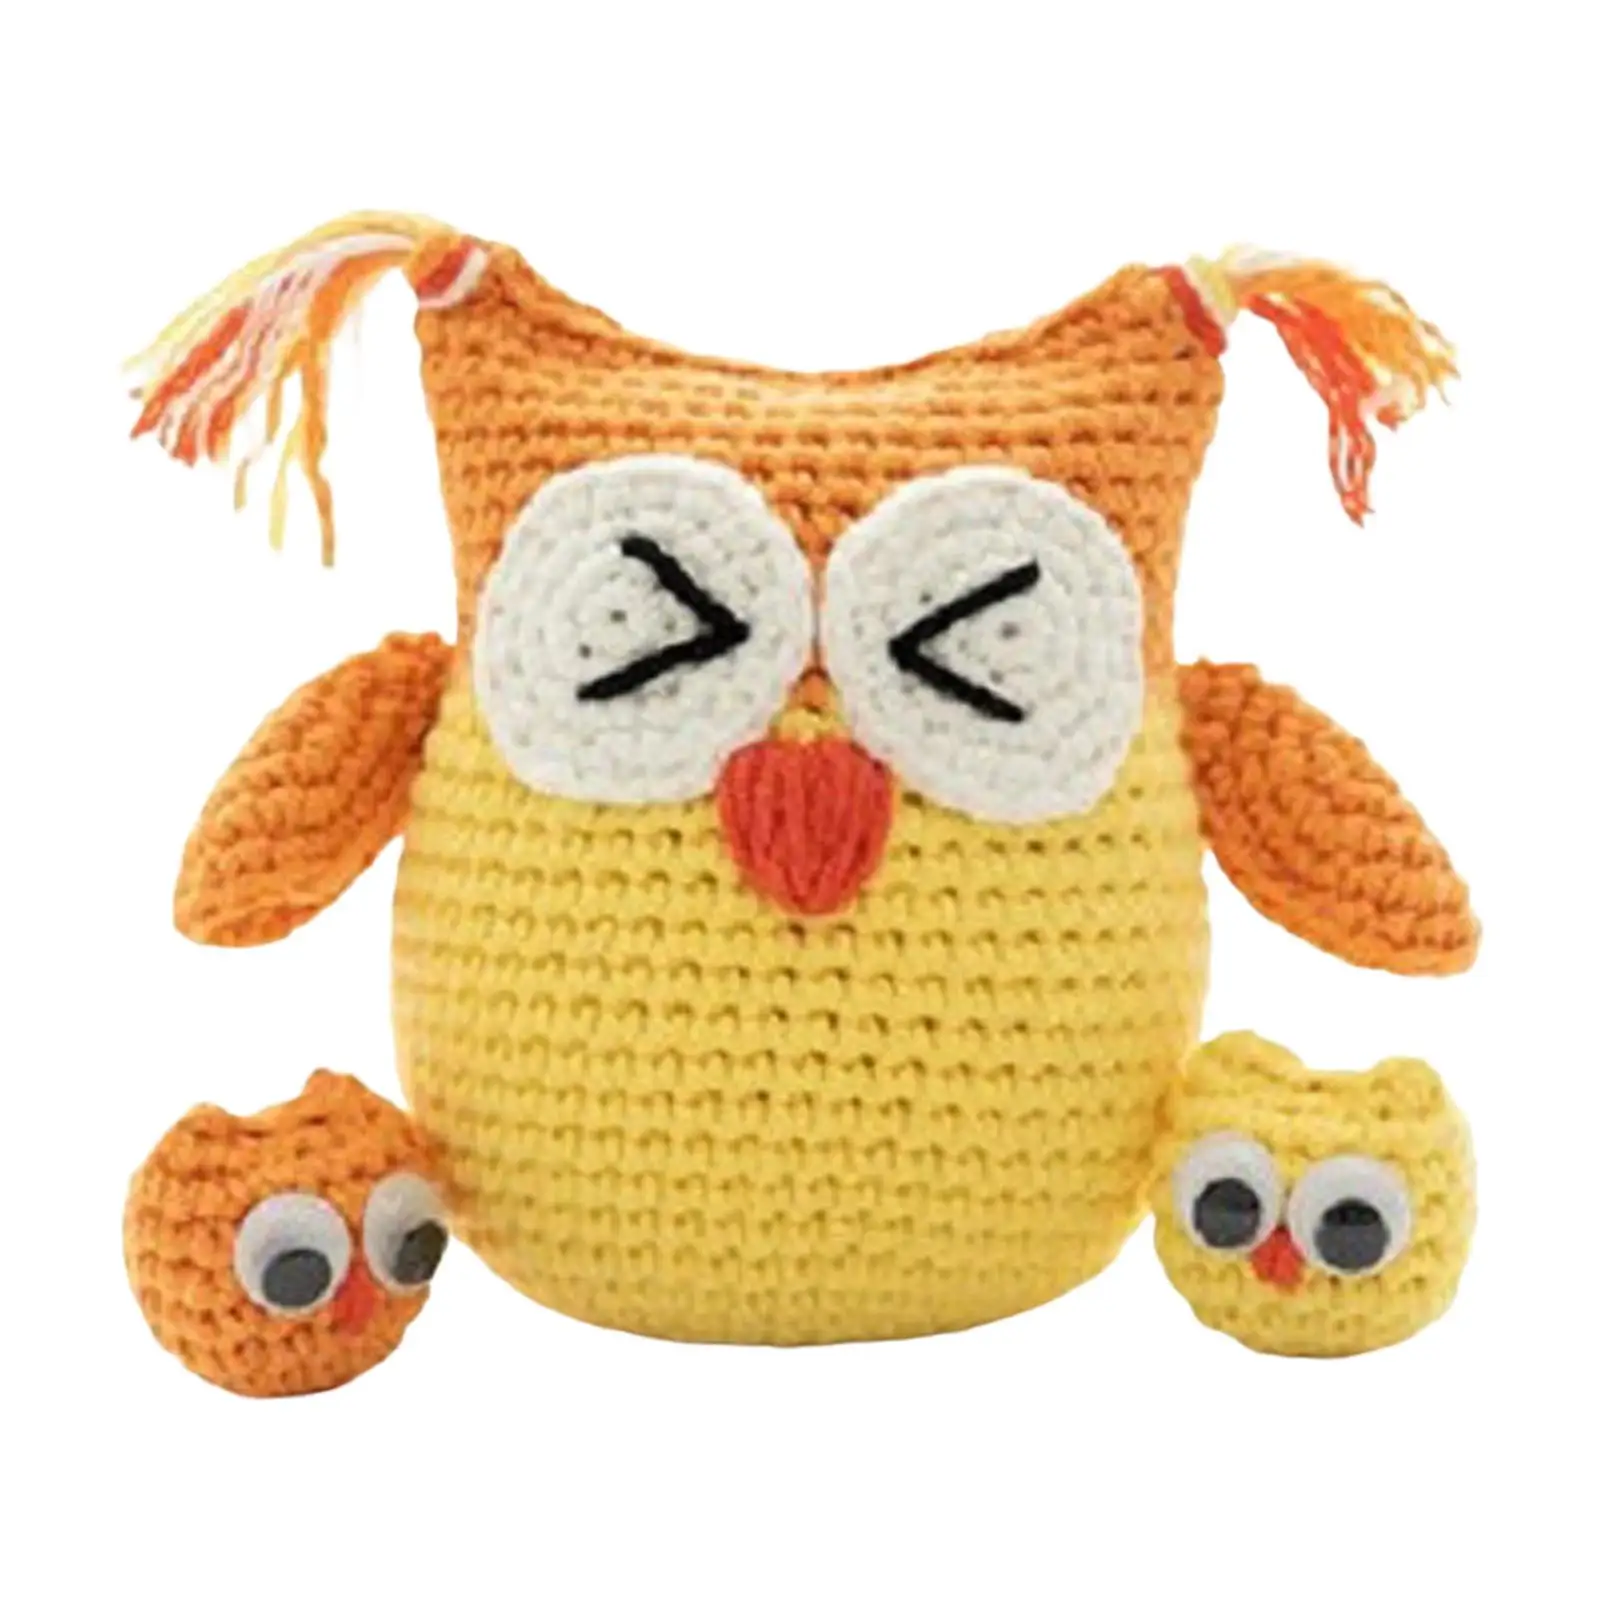 Handmade Crochet Kit Crocheting Knitting Toy Needlework Sewing Craft Beginner Crochet Kit for Perfect Gift